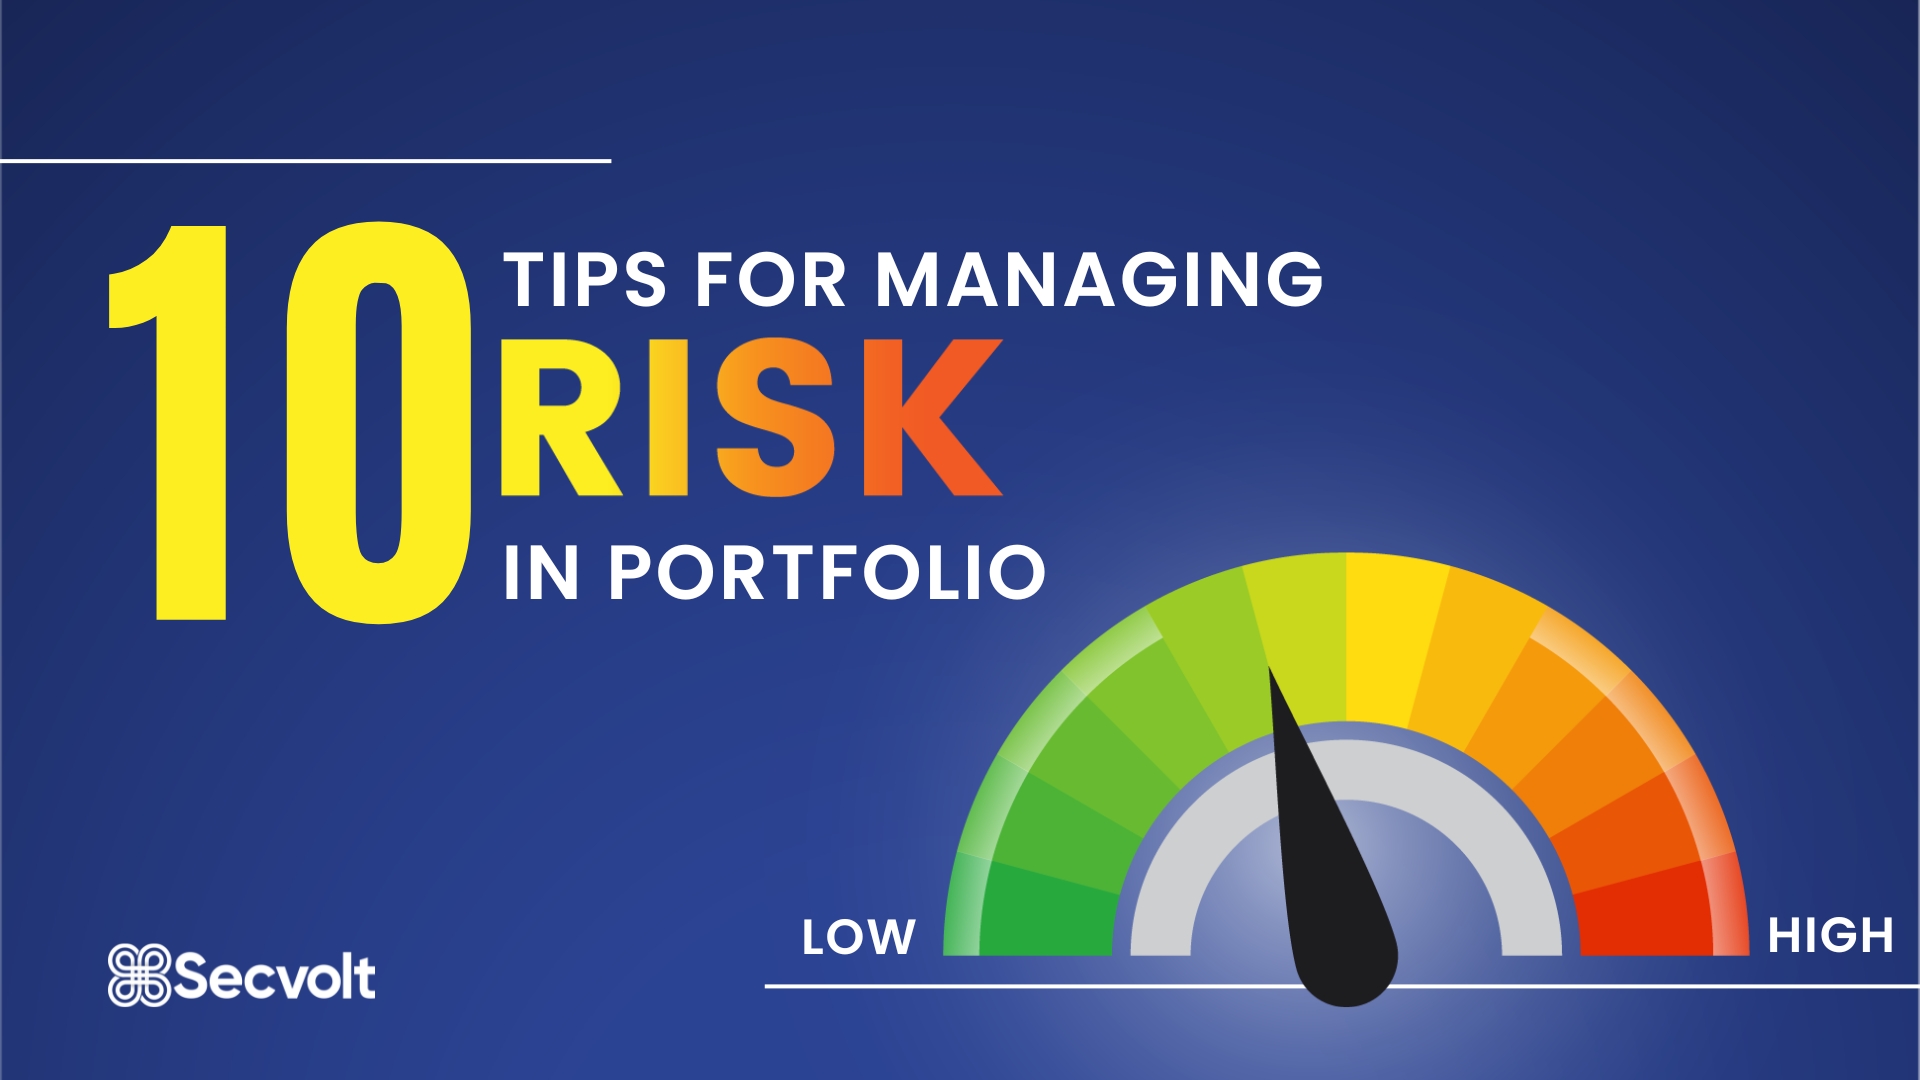 10 Tips for Managing Risk in Portfolio